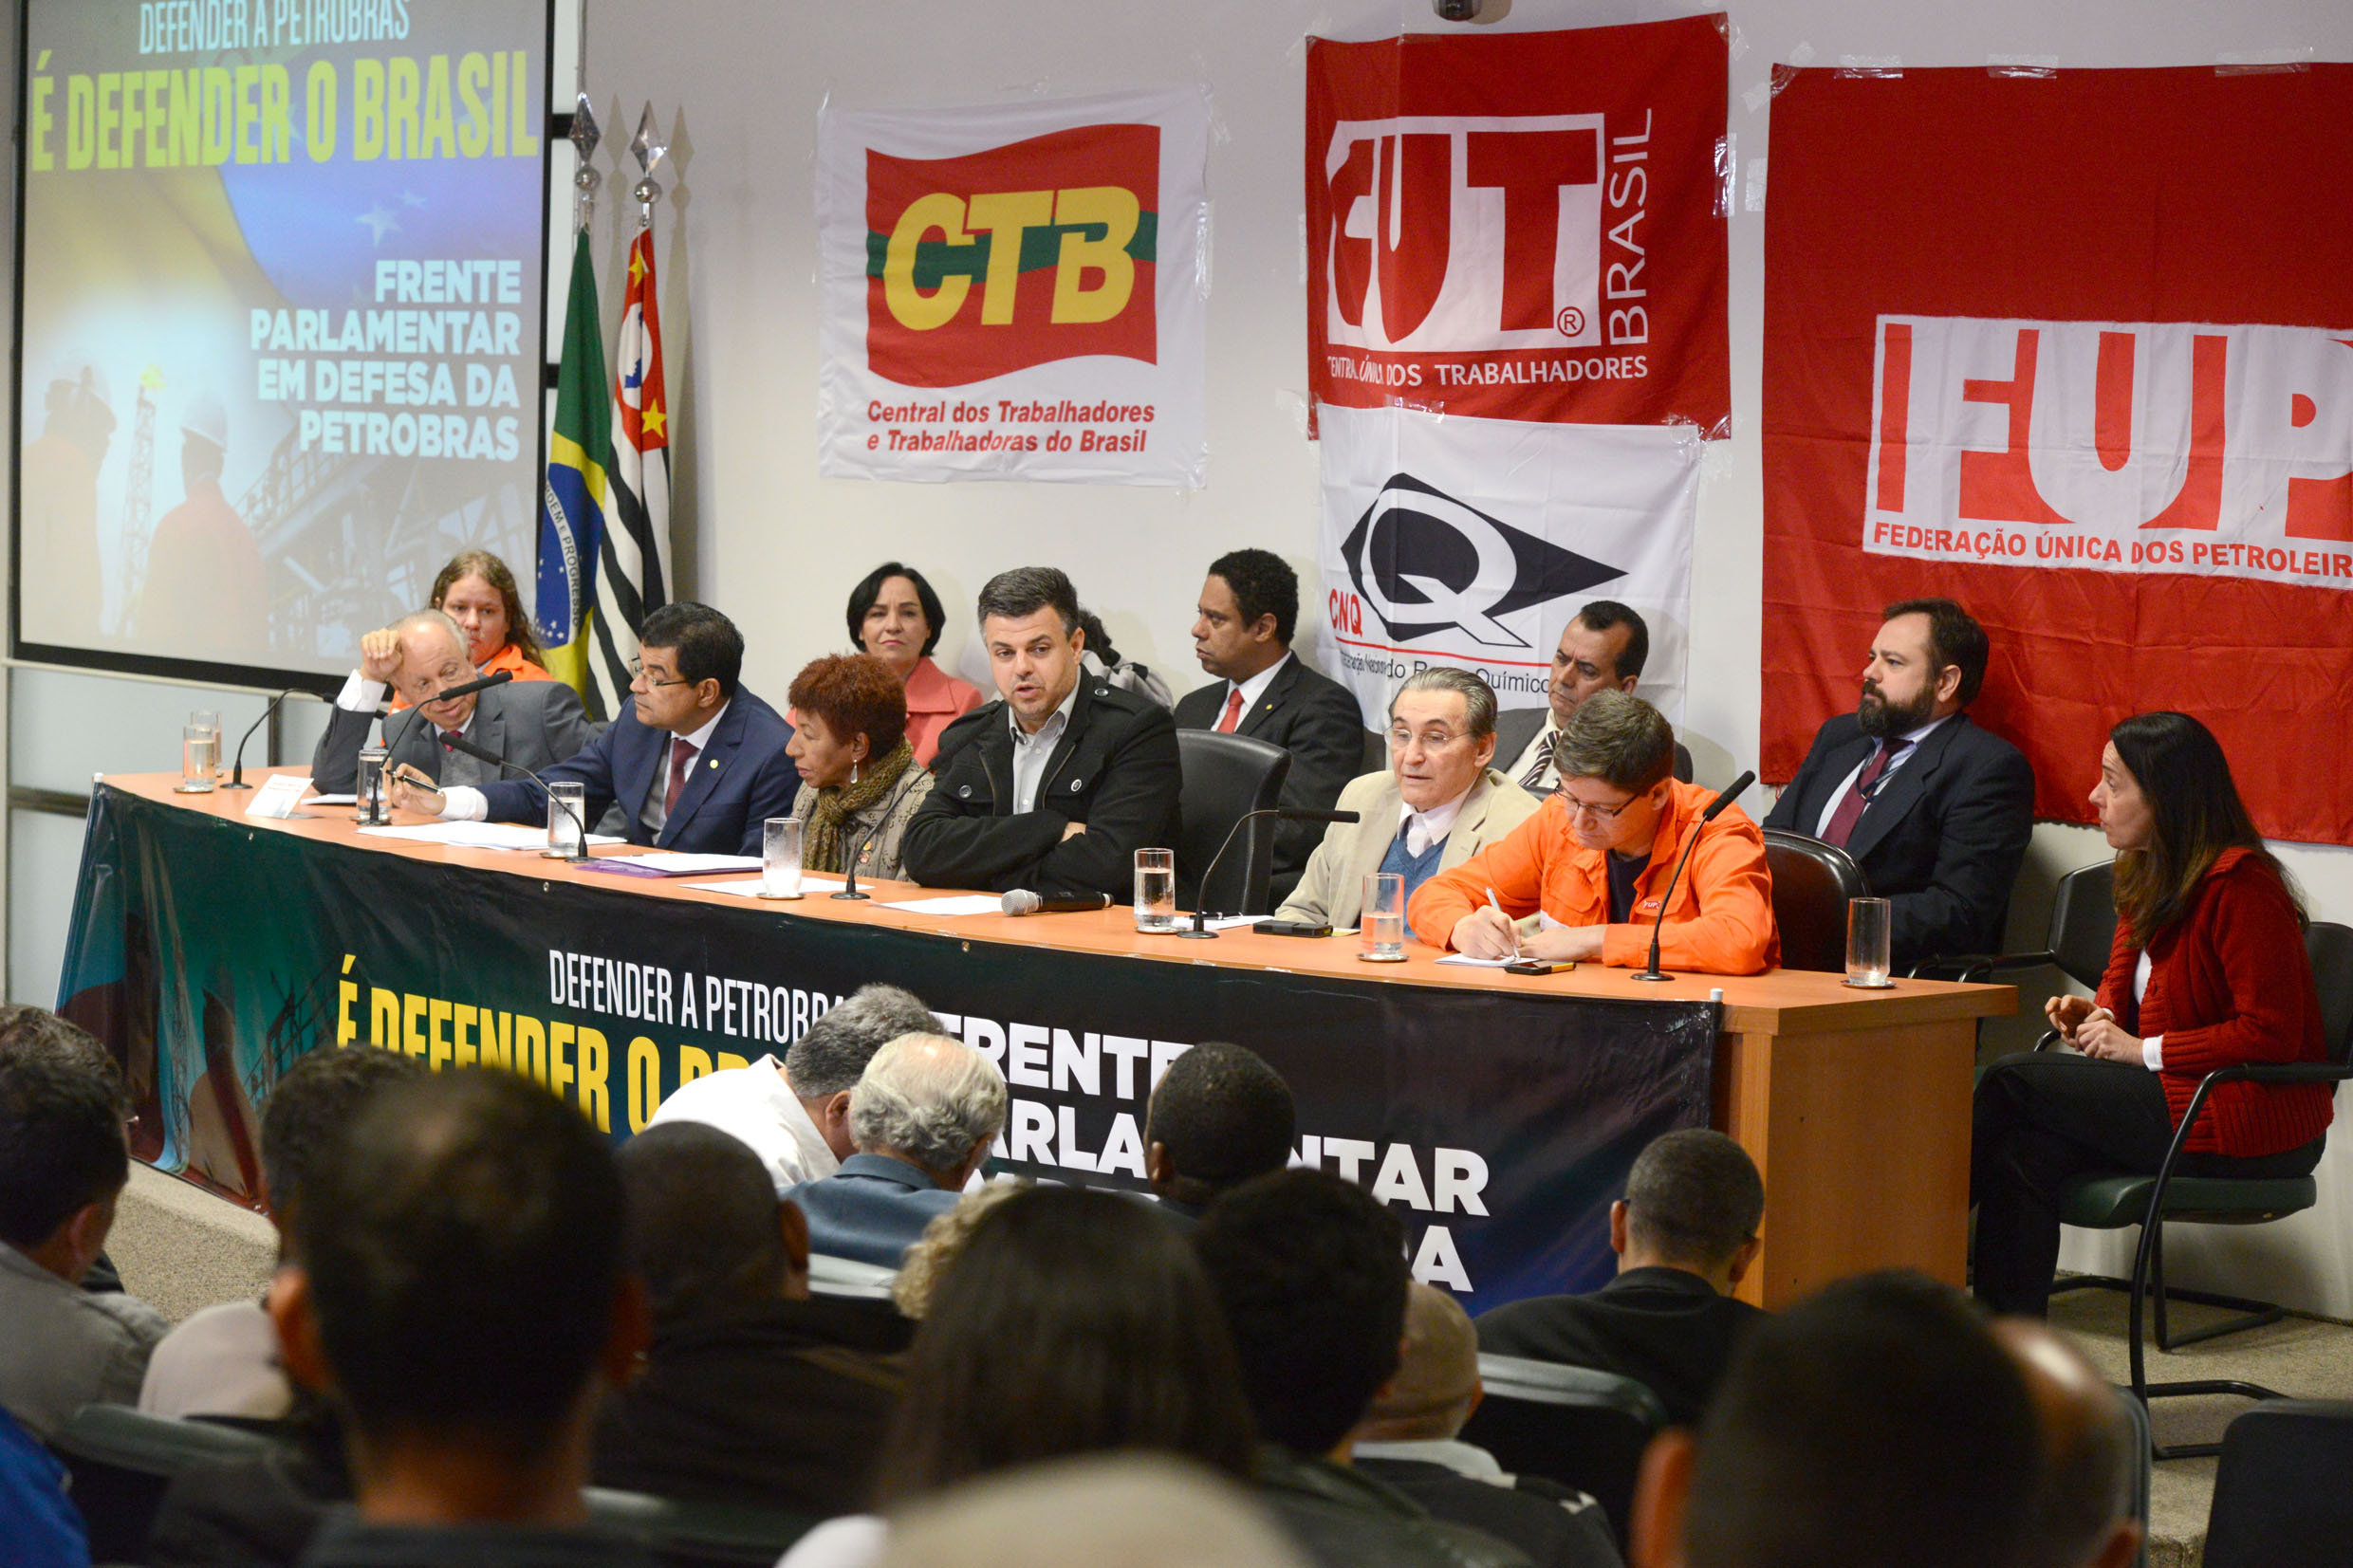 Lanamento da Frente Parlamentar em Defesa da Petrobras <a style='float:right;color:#ccc' href='https://www3.al.sp.gov.br/repositorio/noticia/N-06-2015/fg171371.jpg' target=_blank><i class='bi bi-zoom-in'></i> Clique para ver a imagem </a>